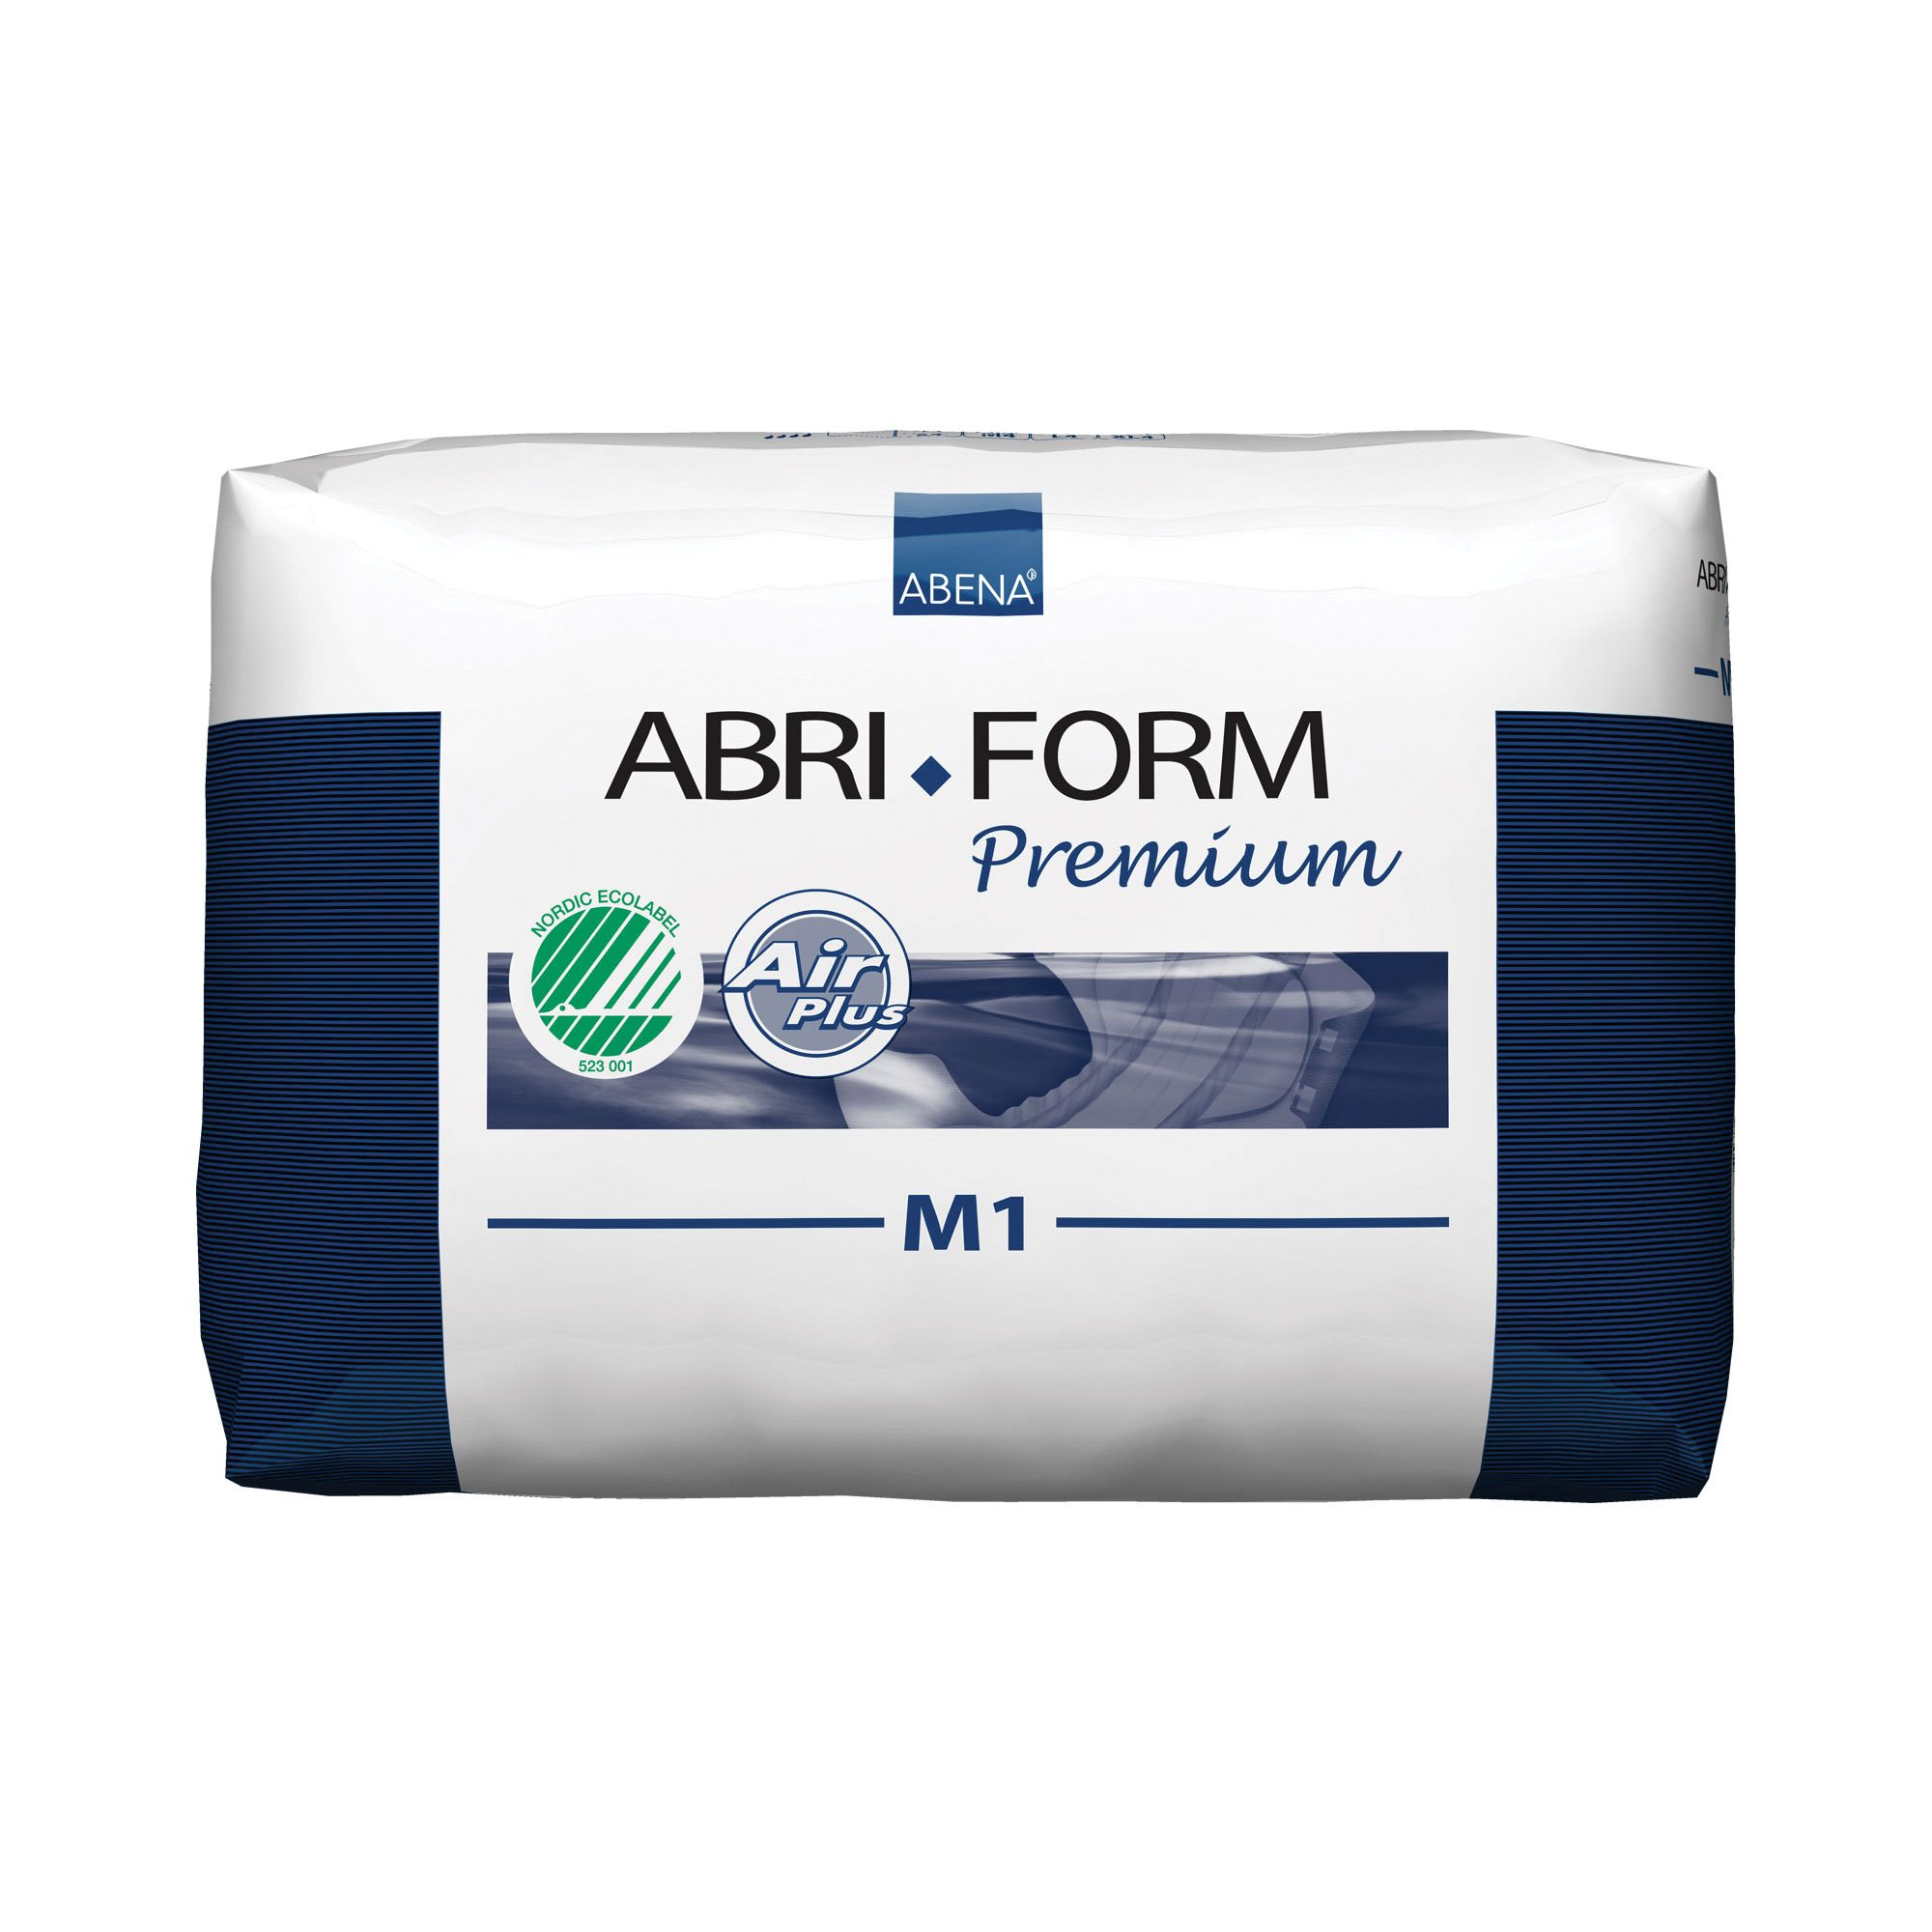 Abri-Form Premium M1 - Pack Of 26